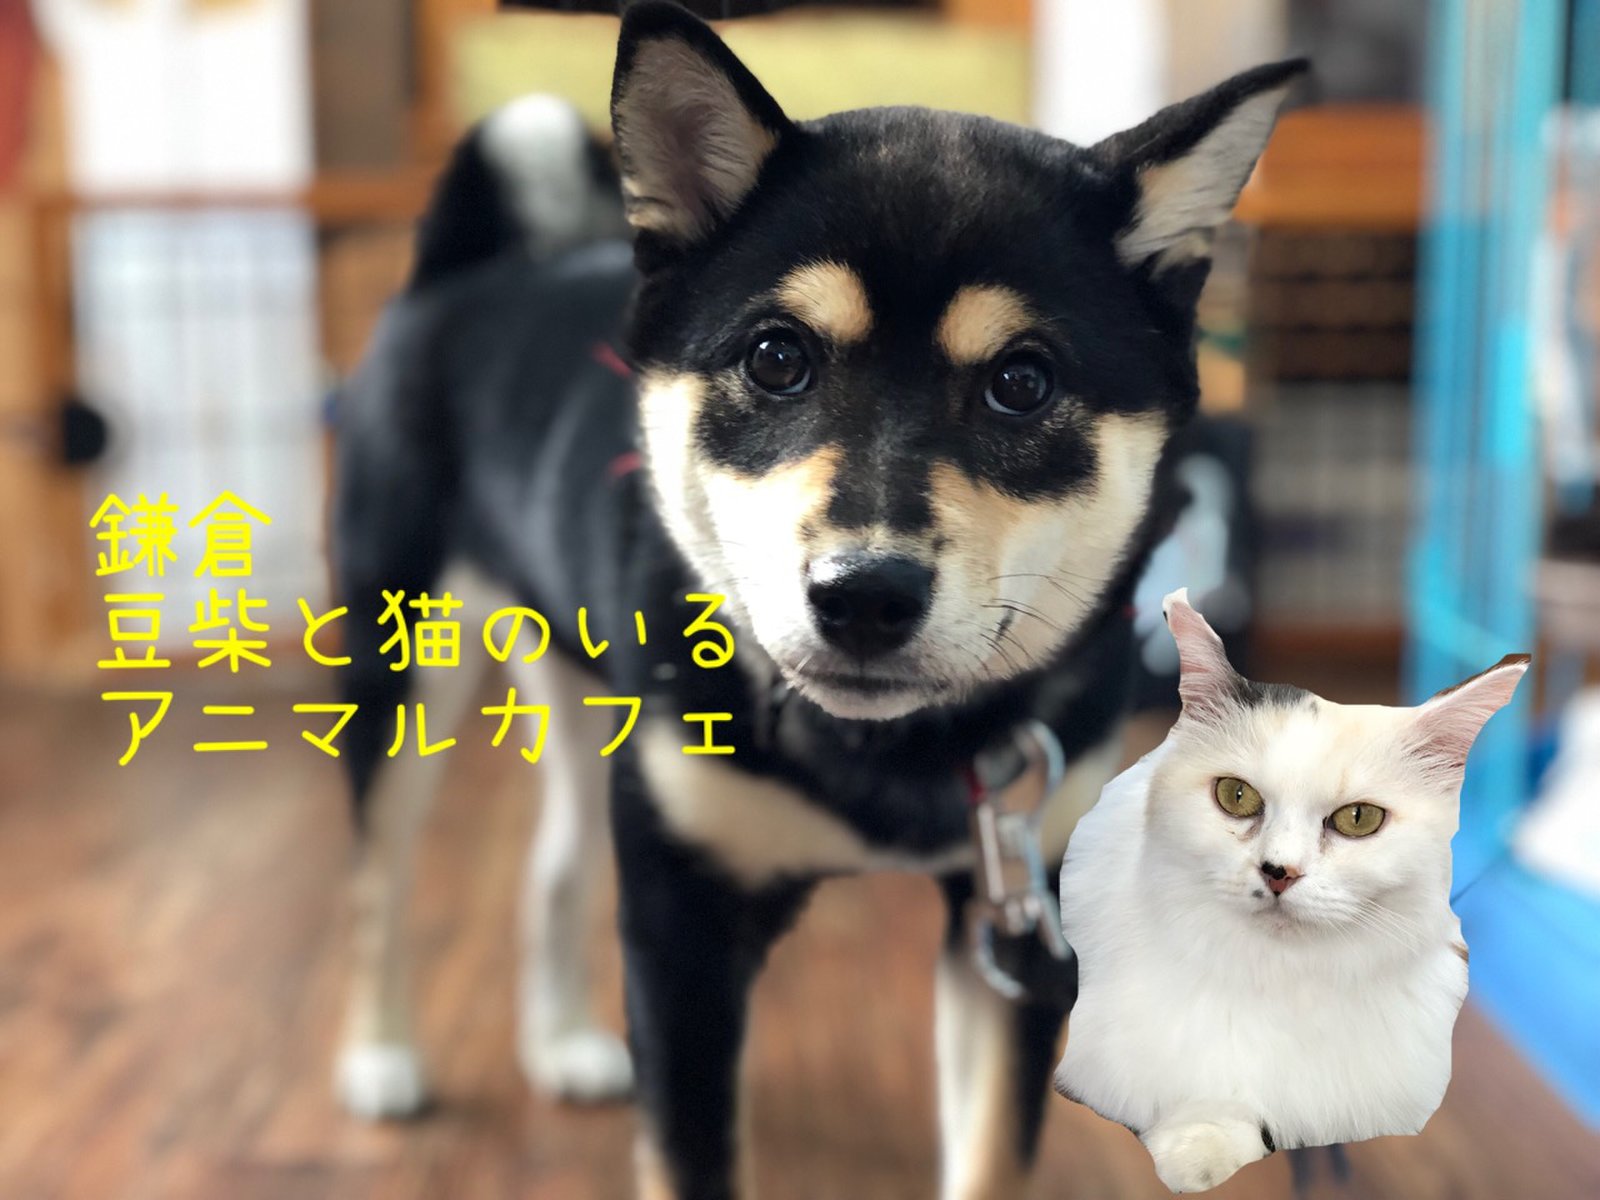 鎌倉の犬猫カフェ 贅沢 豆柴と猫の両方と遊べる マンチカンズ へ Playlife プレイライフ